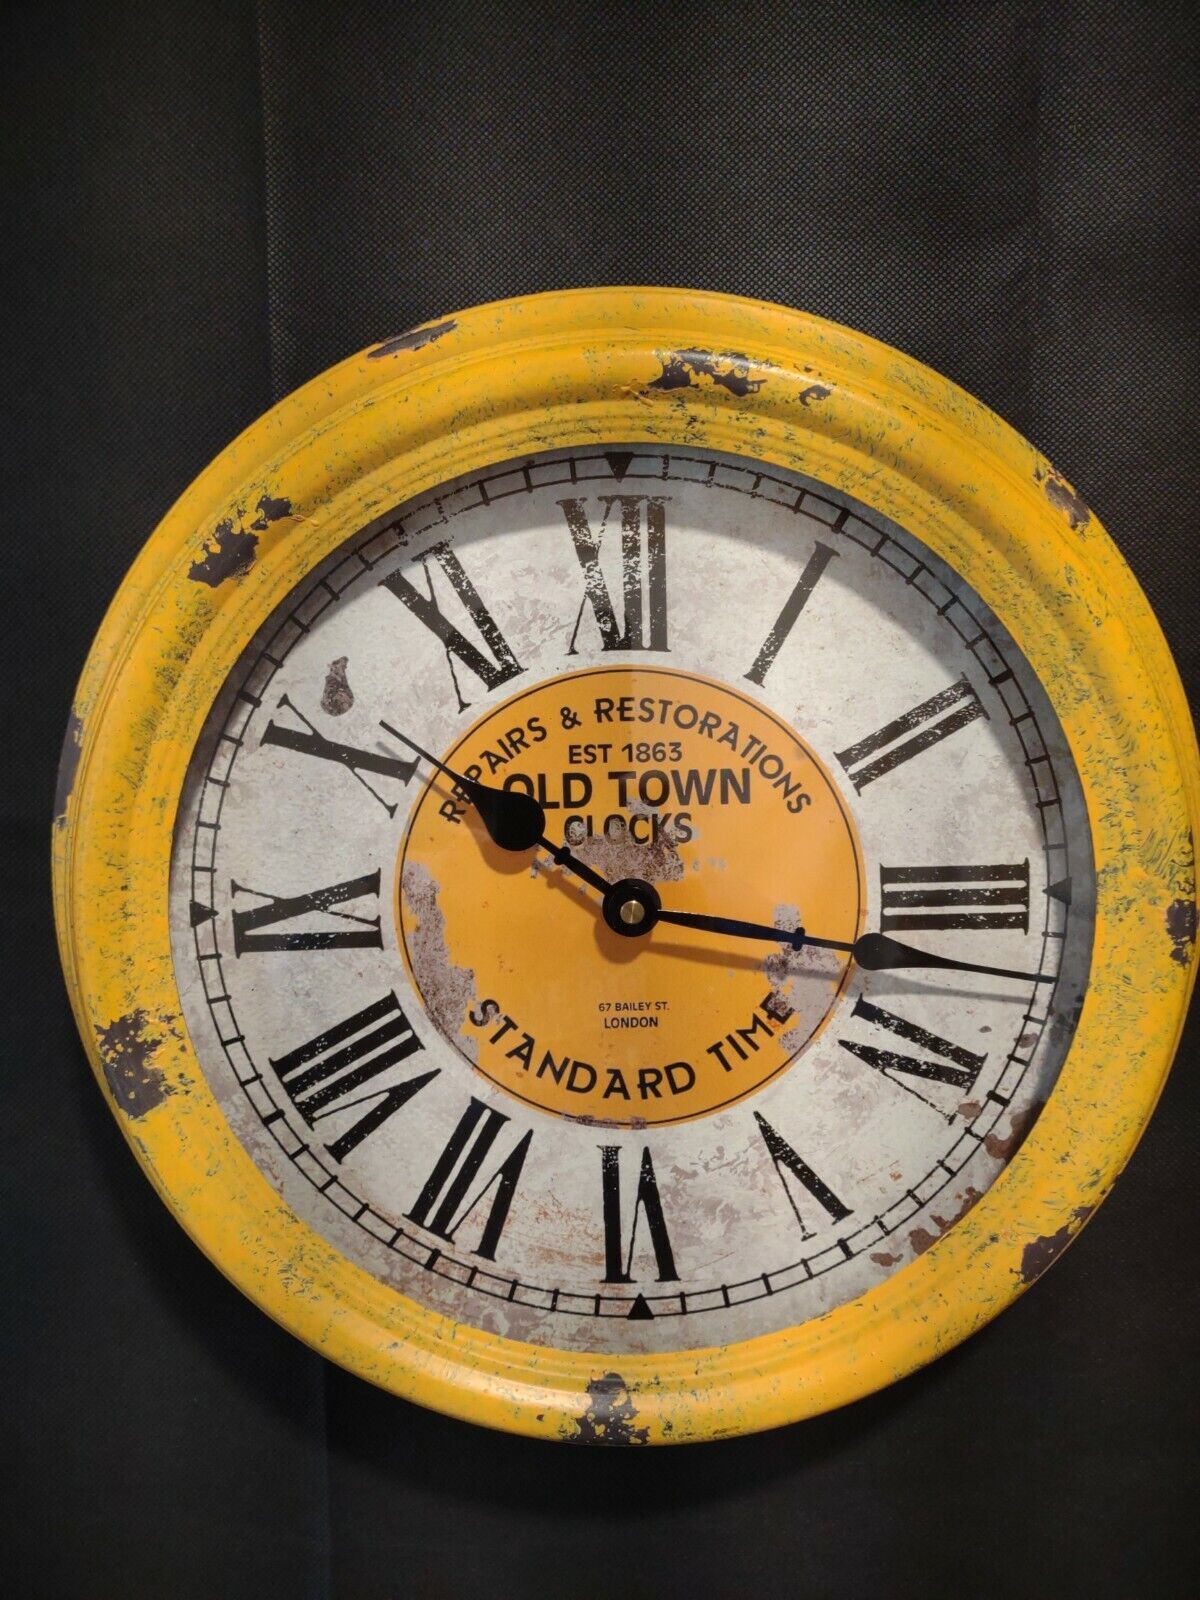 OLD TOWN Repairs & Restorations Established 1863 New Vintage style metal clock